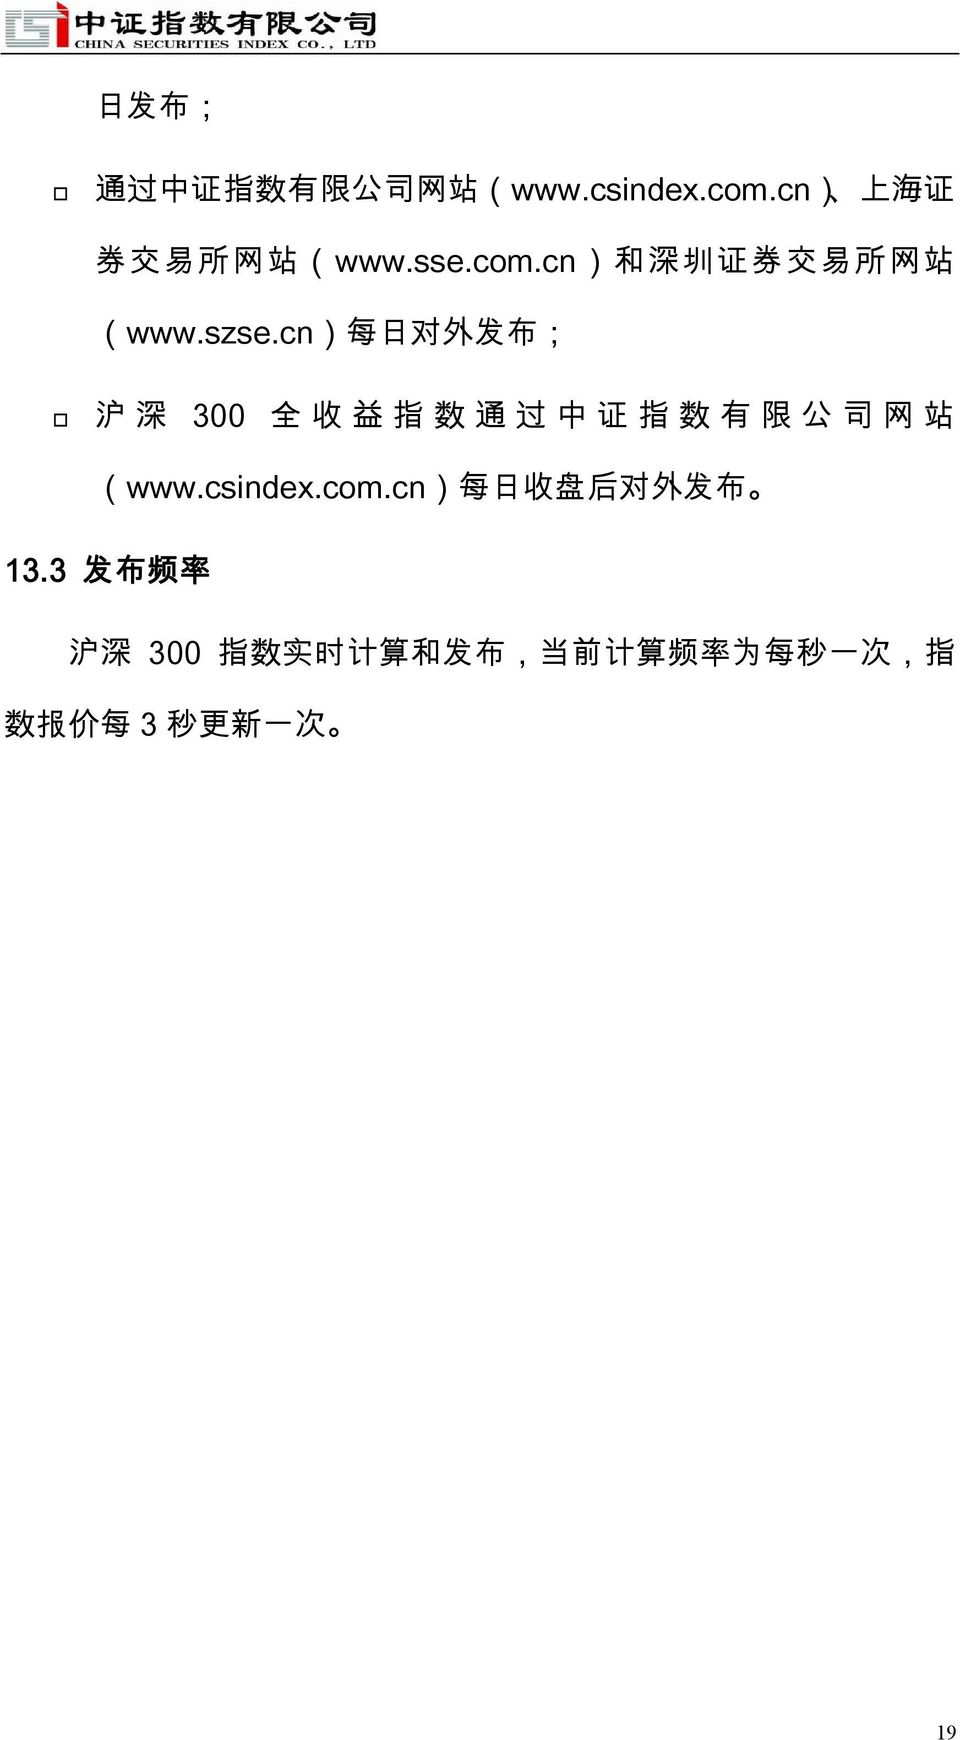 cn) 每 日 对 外 发 布 ; 沪 深 300 全 收 益 指 数 通 过 中 证 指 数 有 限 公 司 网 站 (www.csindex.